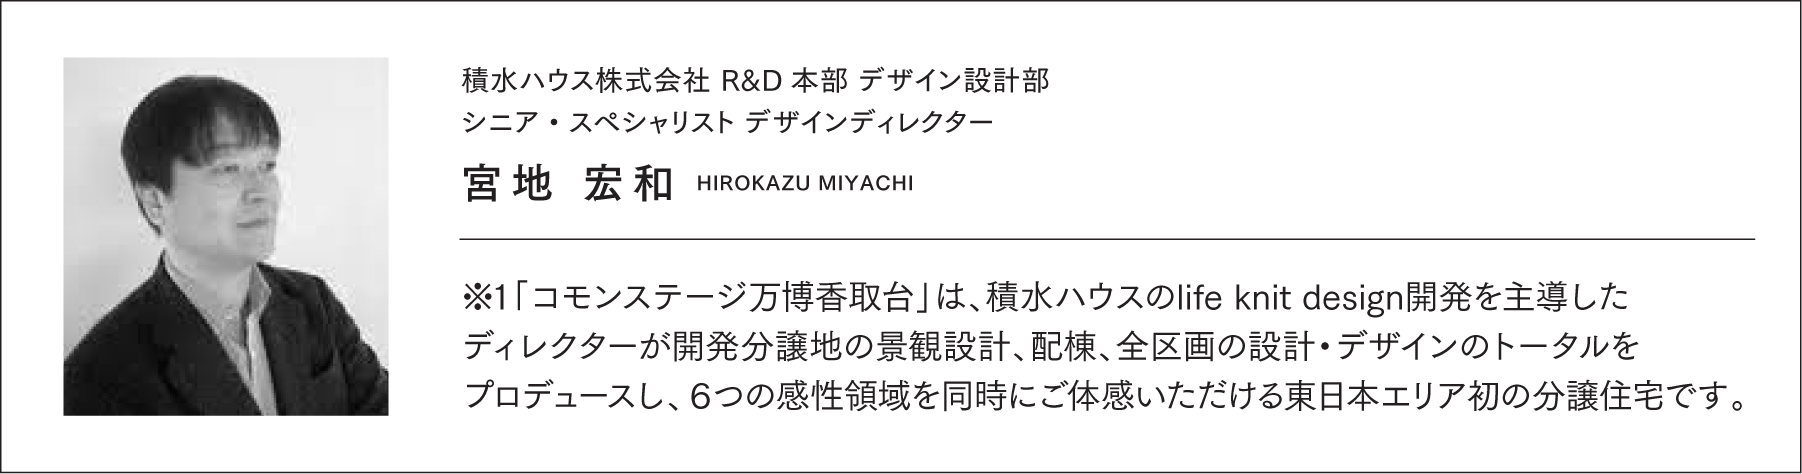 積水ハウス株式会社 R&D本部 デザイン設計部シニア・スペシャリスト デザインディレクター　宮地 宏和　HIROKAZU MIYACHI